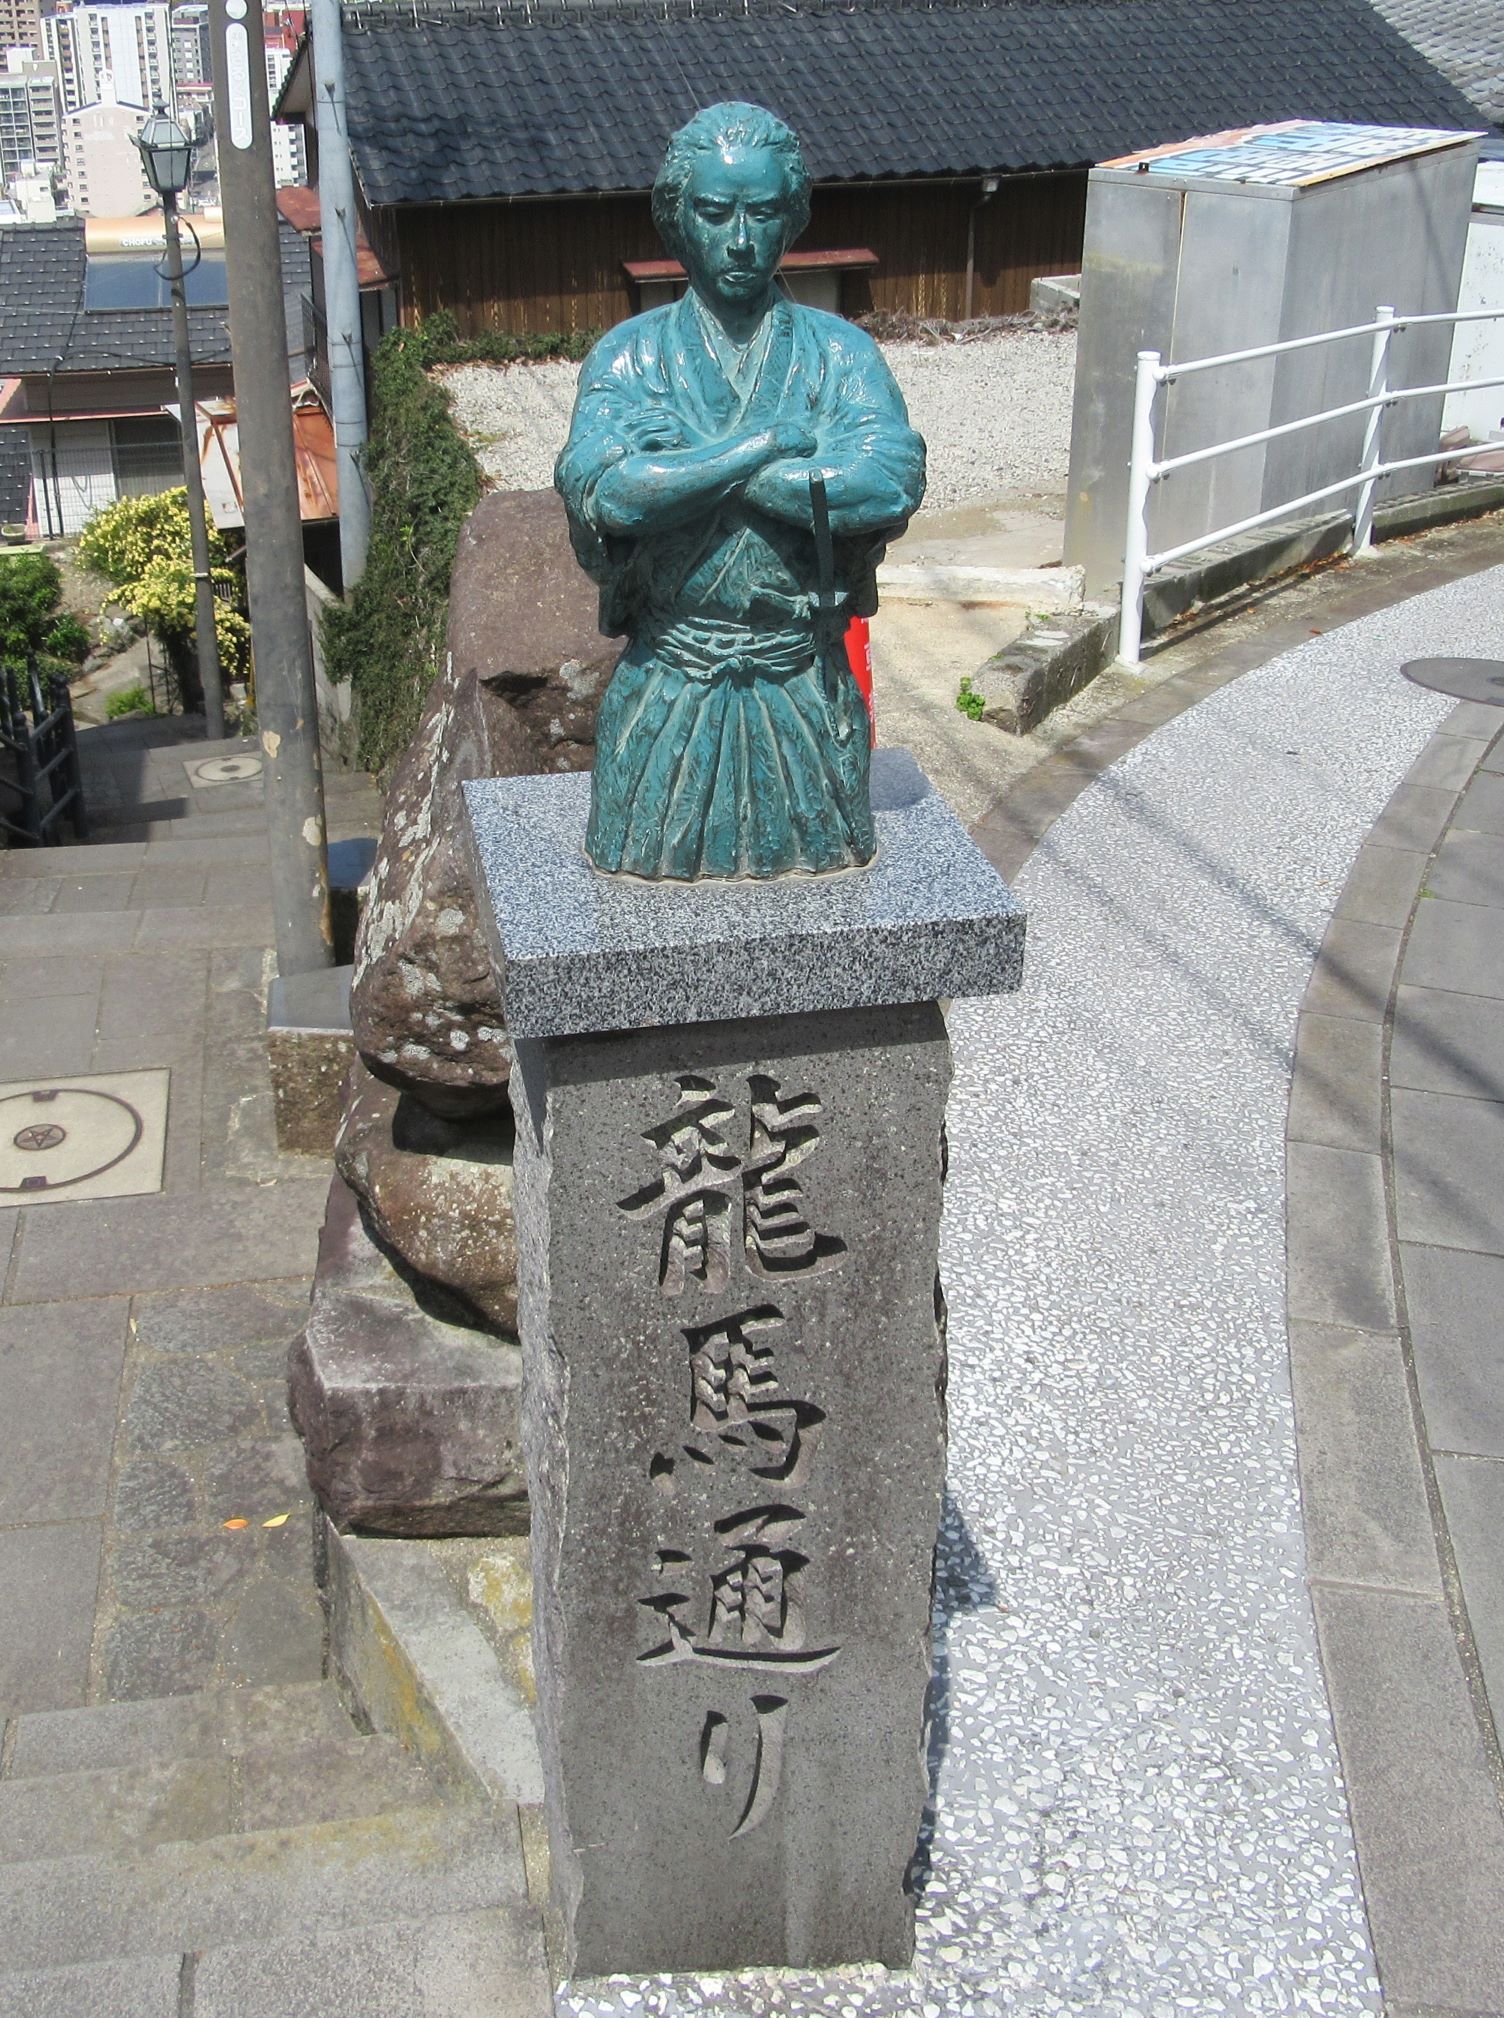 長崎県長崎市の風頭公園付近には龍馬通りという道があり、坂本龍馬の小さい像もあります。